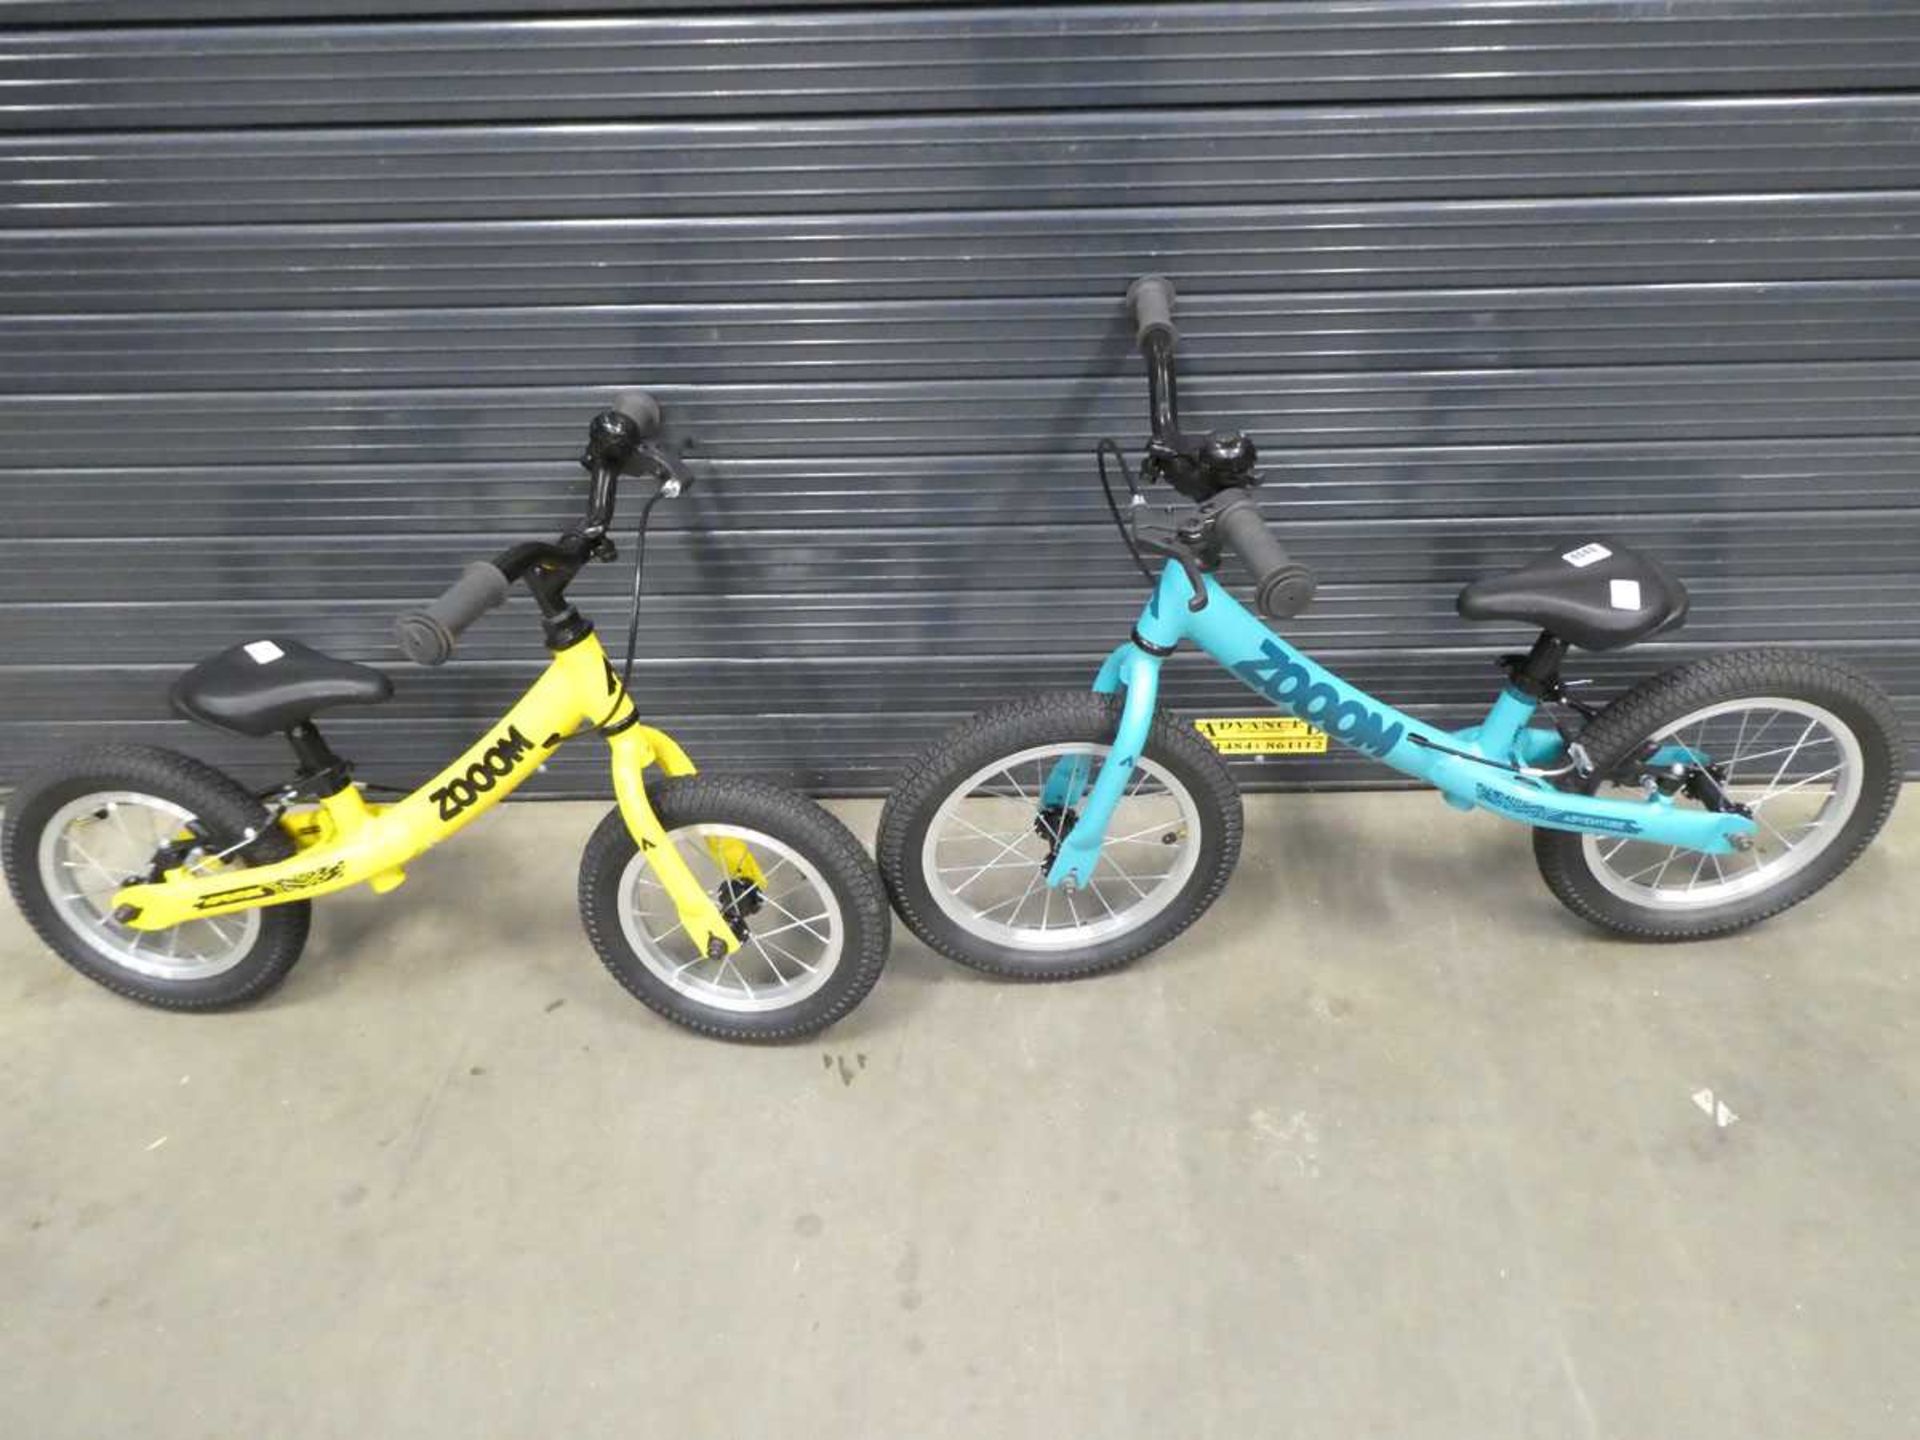 Two balance bikes